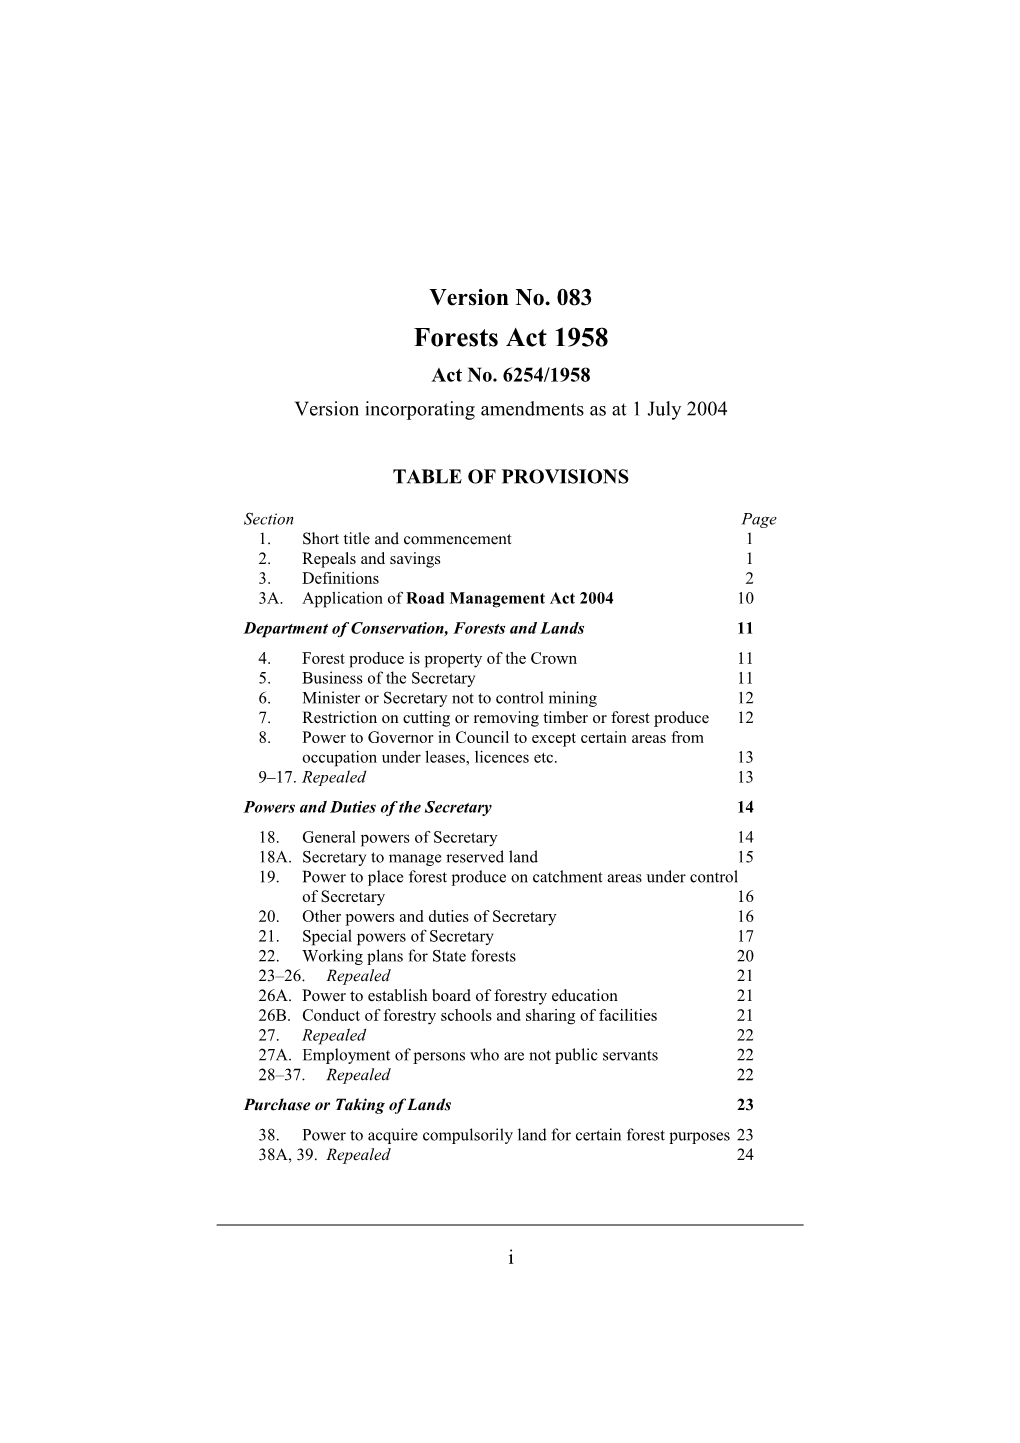 Version Incorporating Amendments As at 1 July 2004